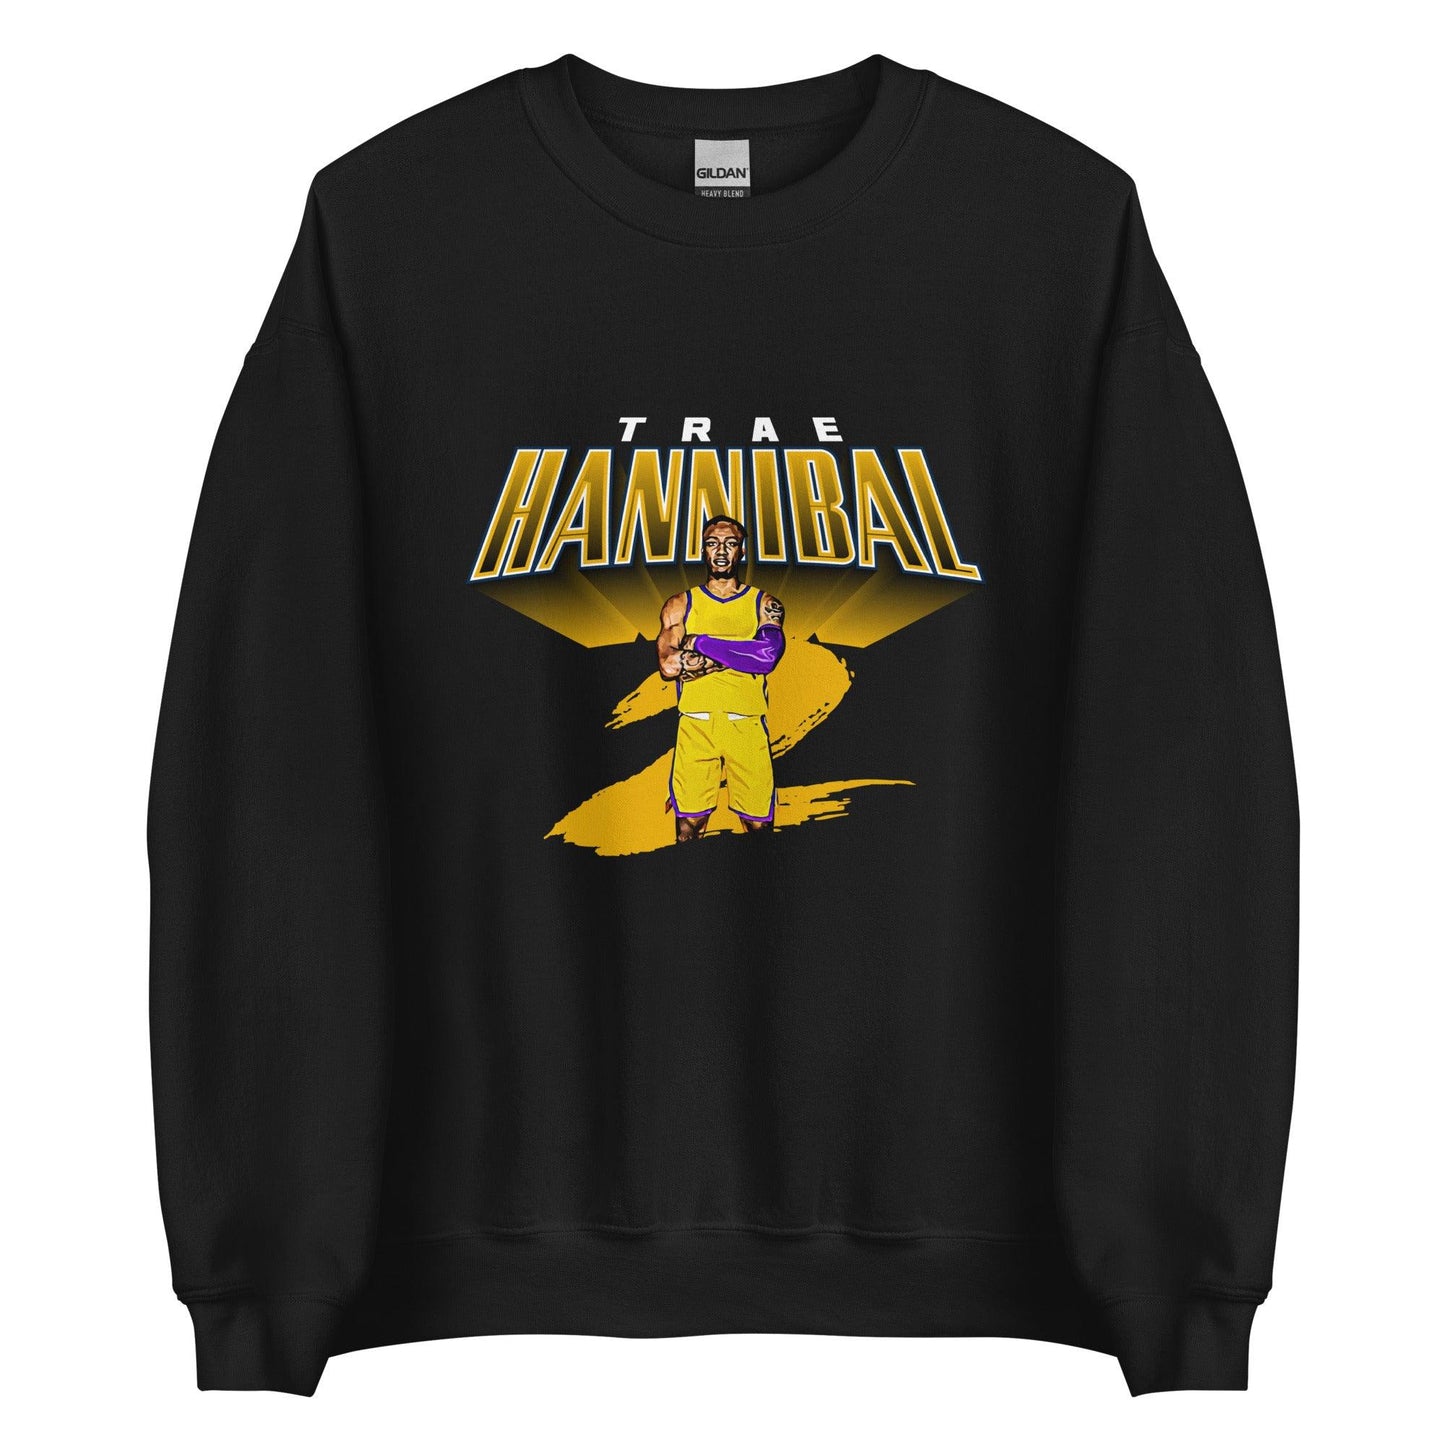 Trae Hannibal "Gameday" Sweatshirt - Fan Arch